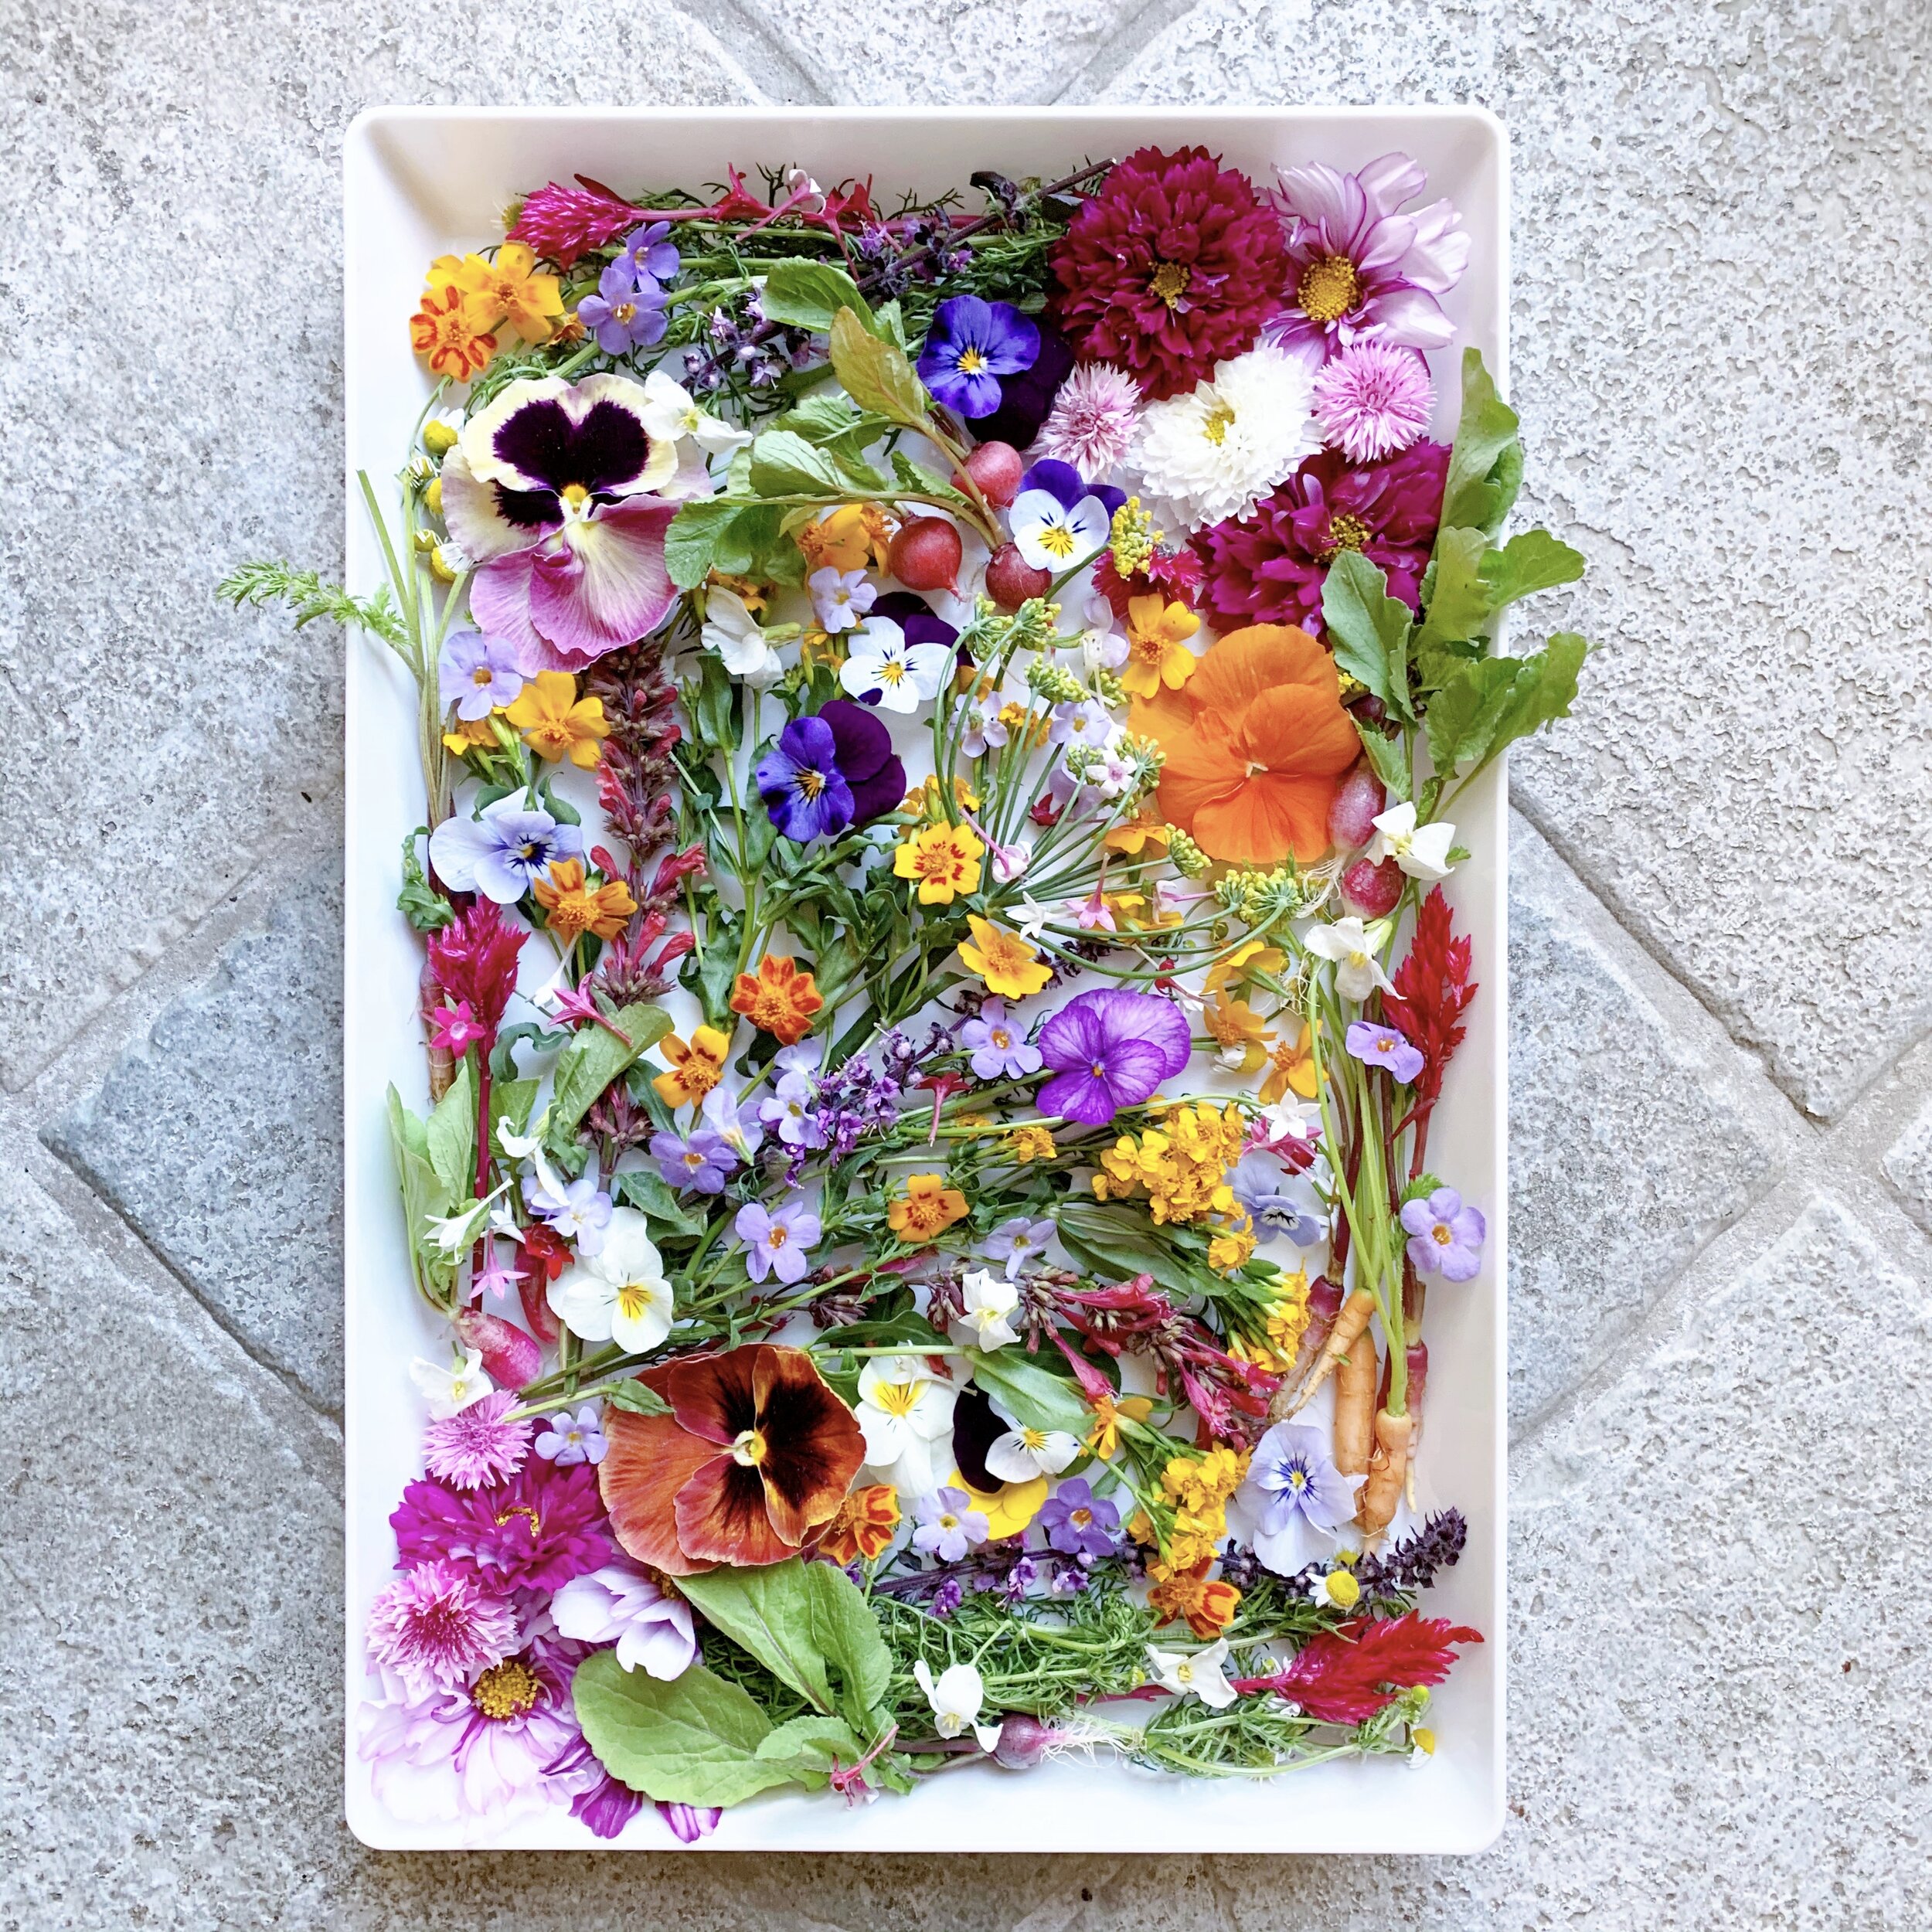 Buy Dried Edible Flowers Online